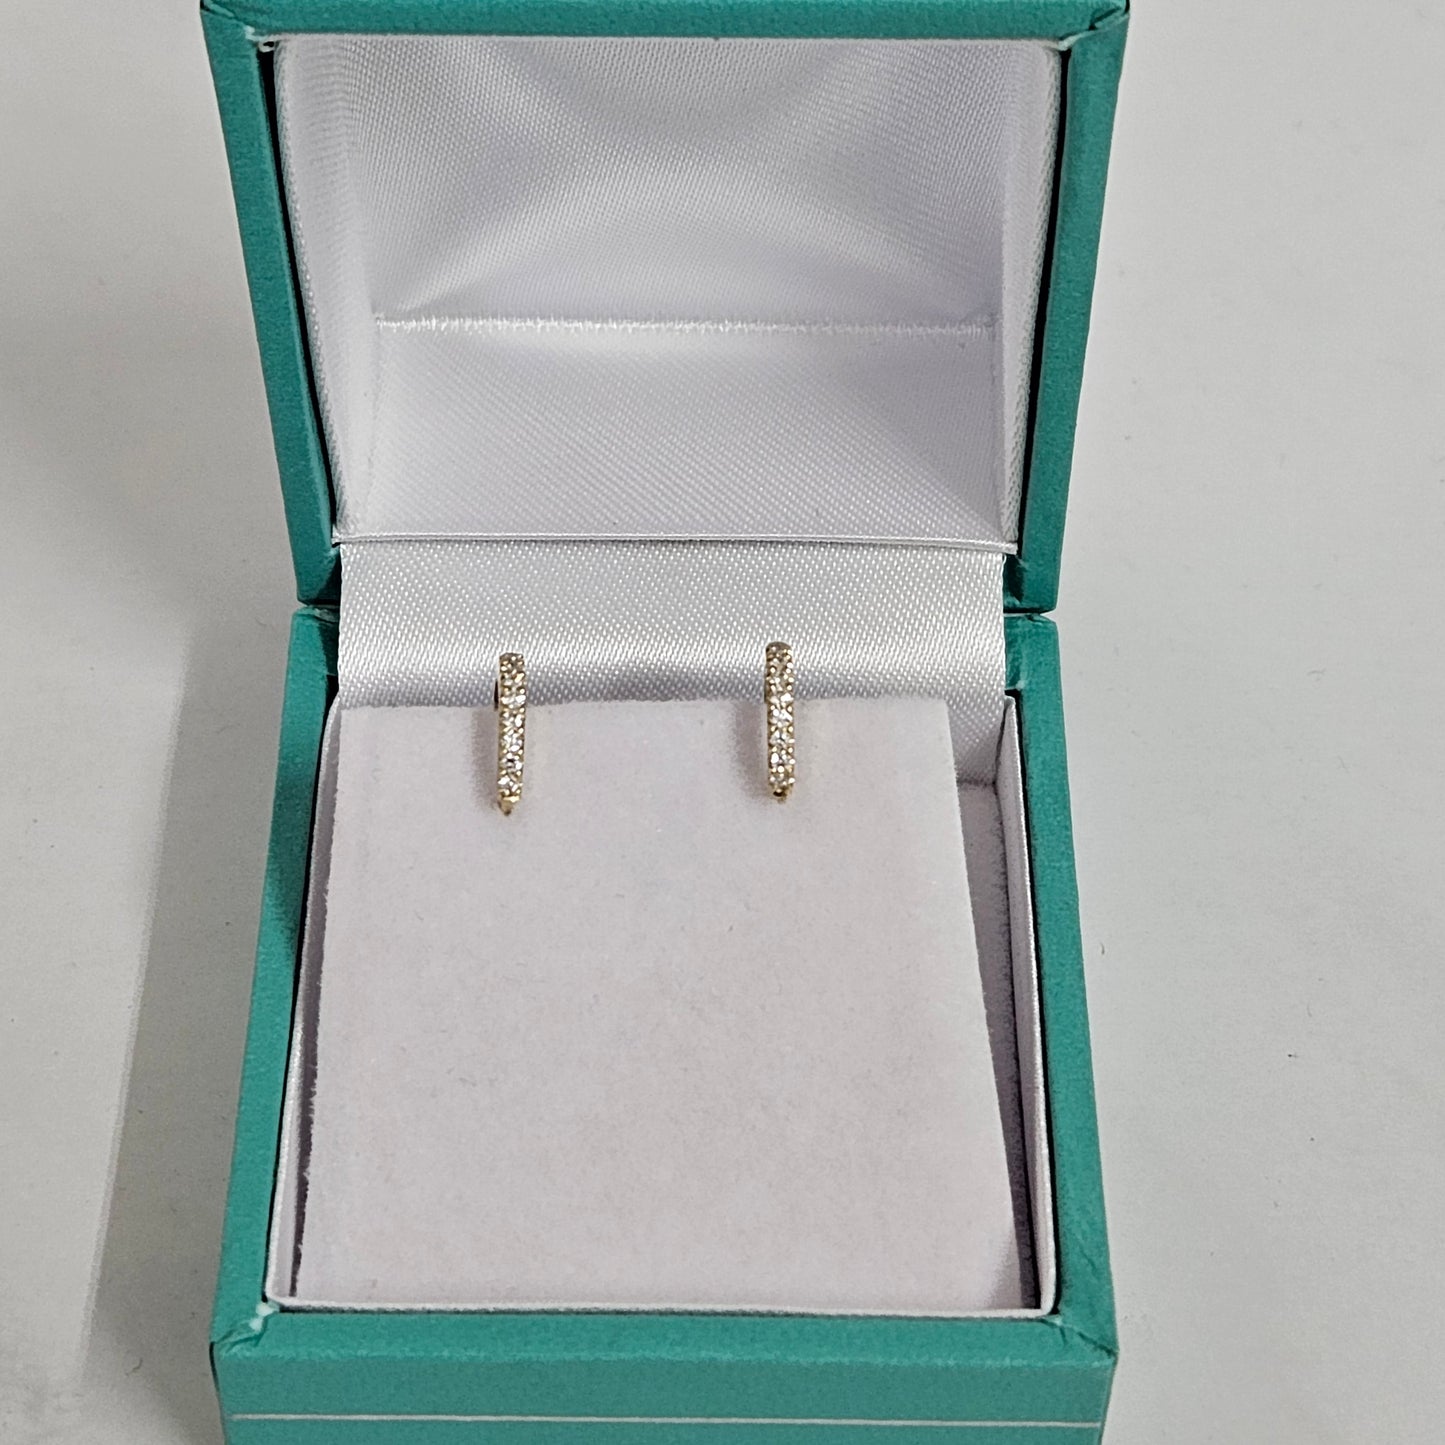 Mini hoop Earrings /8.5mm,9.5mm.10mm Hoop Earrings /Handmade Diamond Earrings/Diamond Small Cartilage Hoop Earrings/Anniversary gift